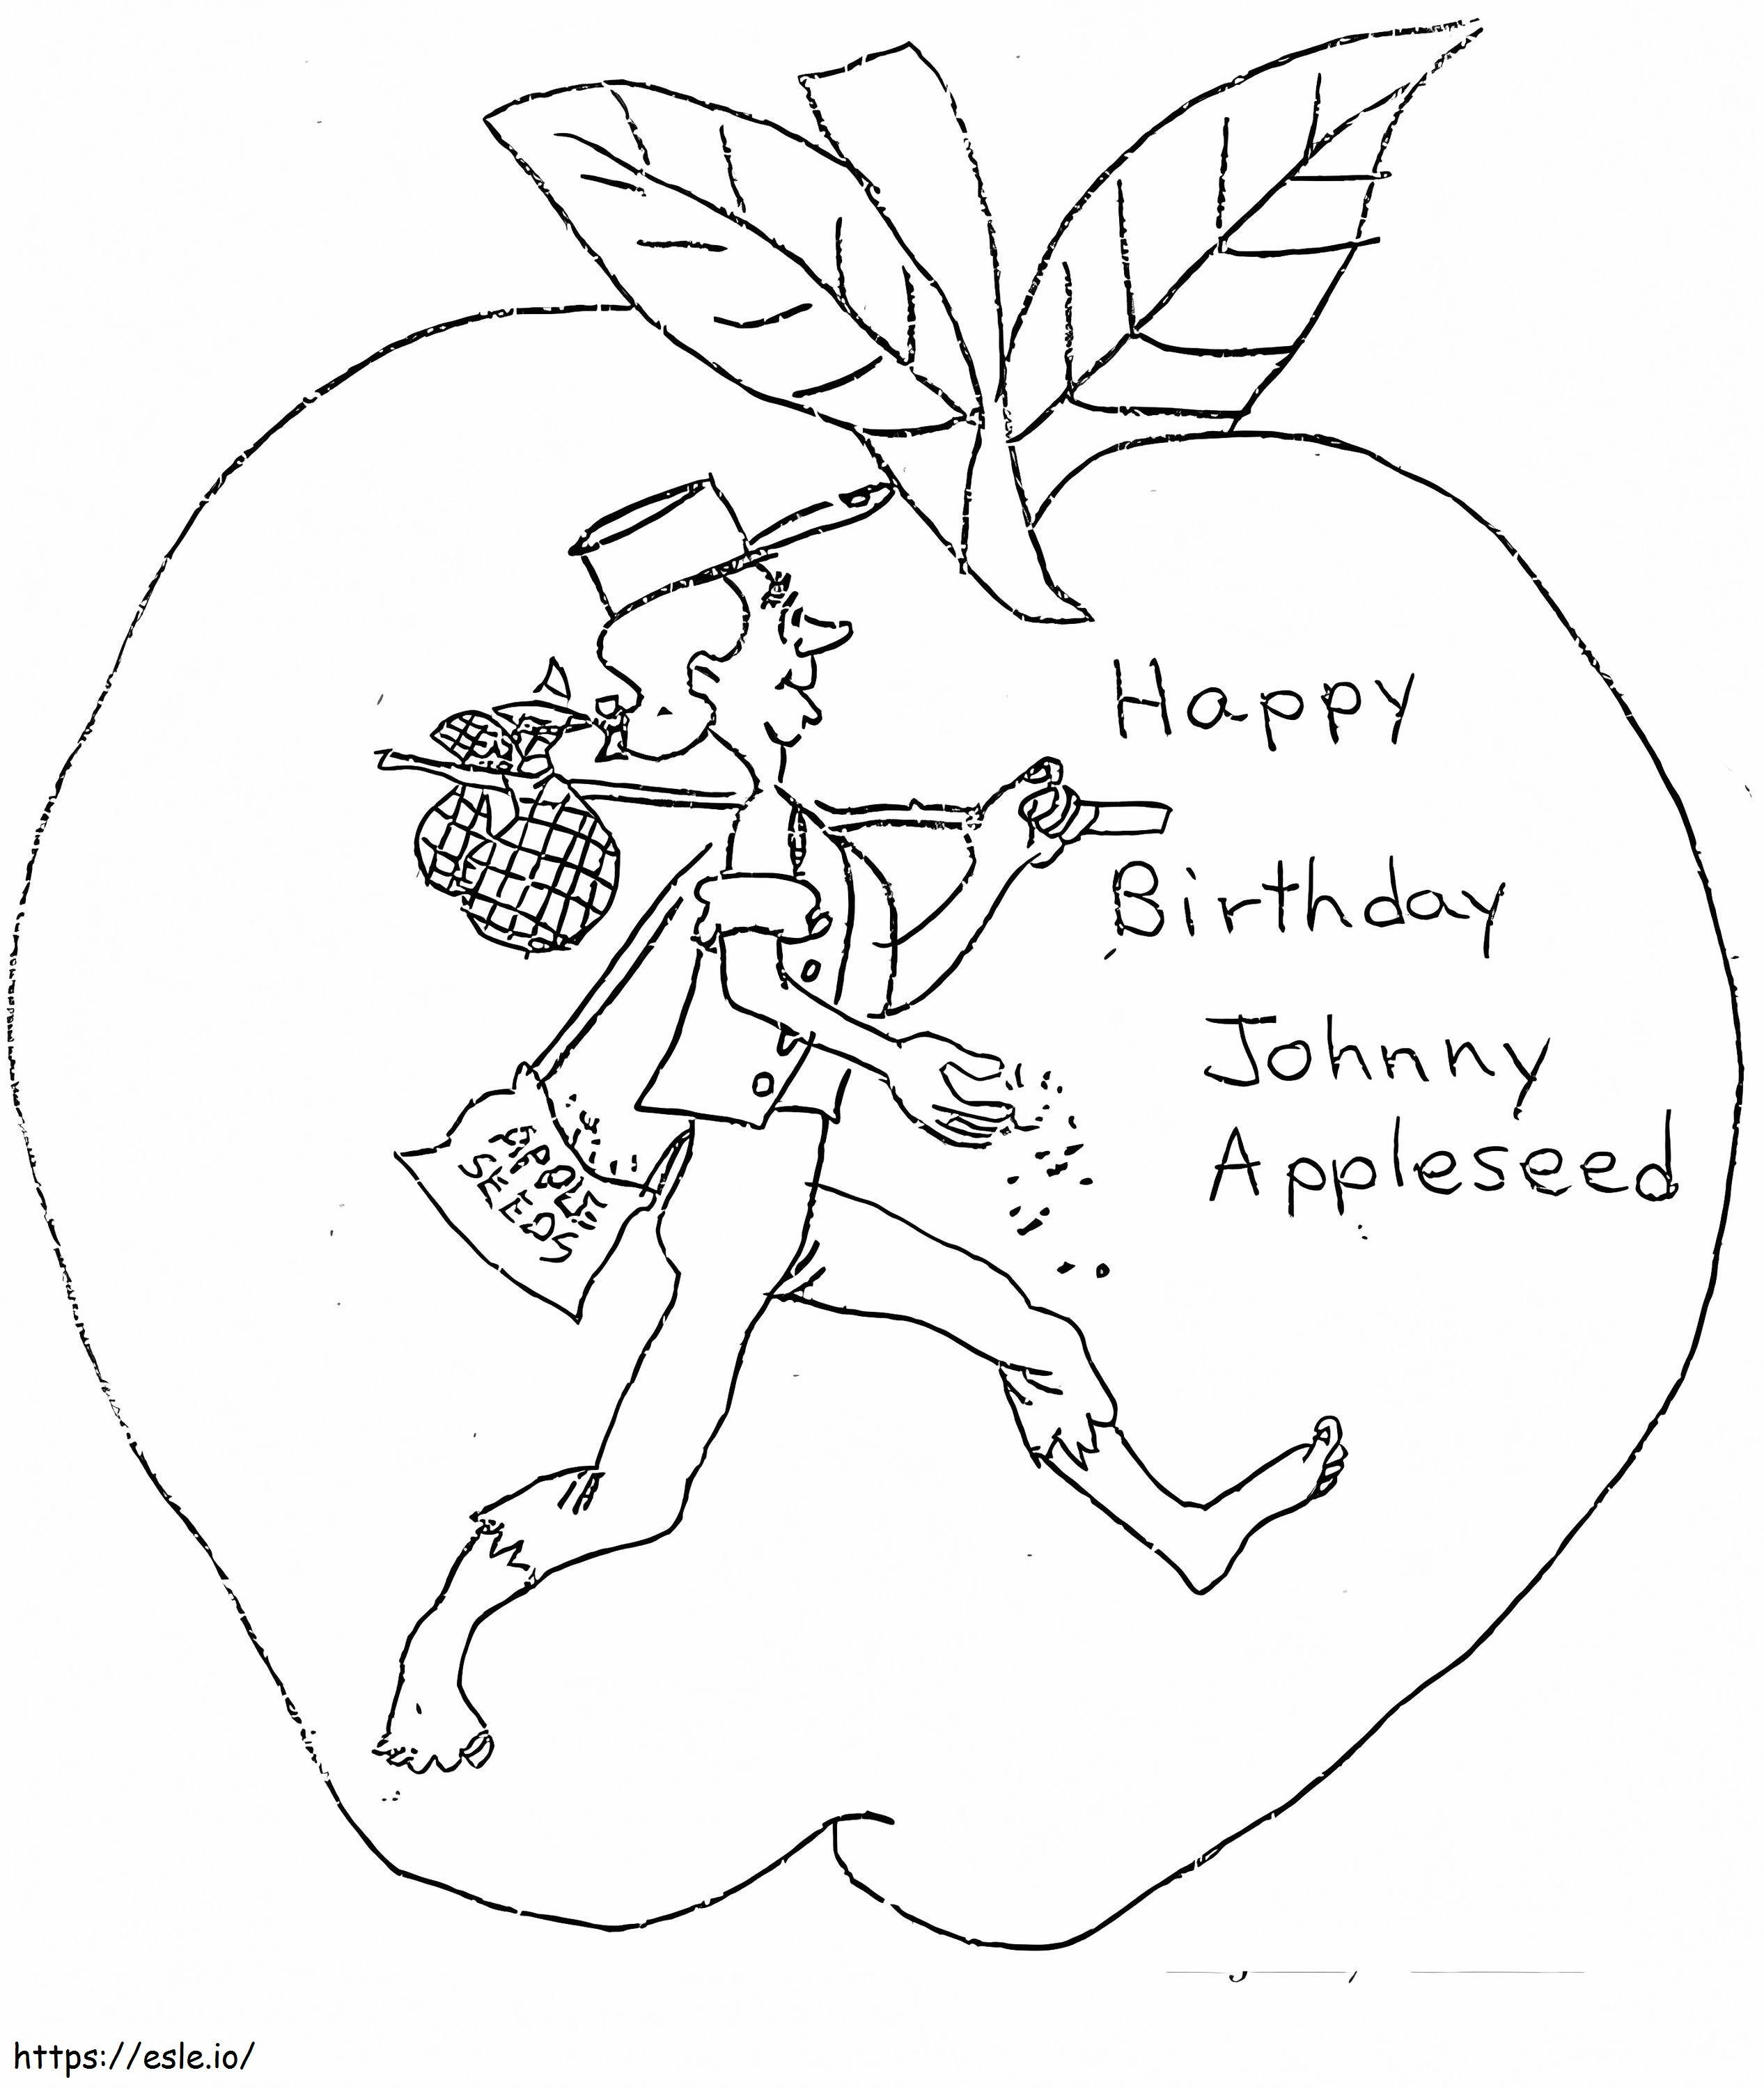 ジョニー・アップルシードお誕生日おめでとう ぬりえ - 塗り絵